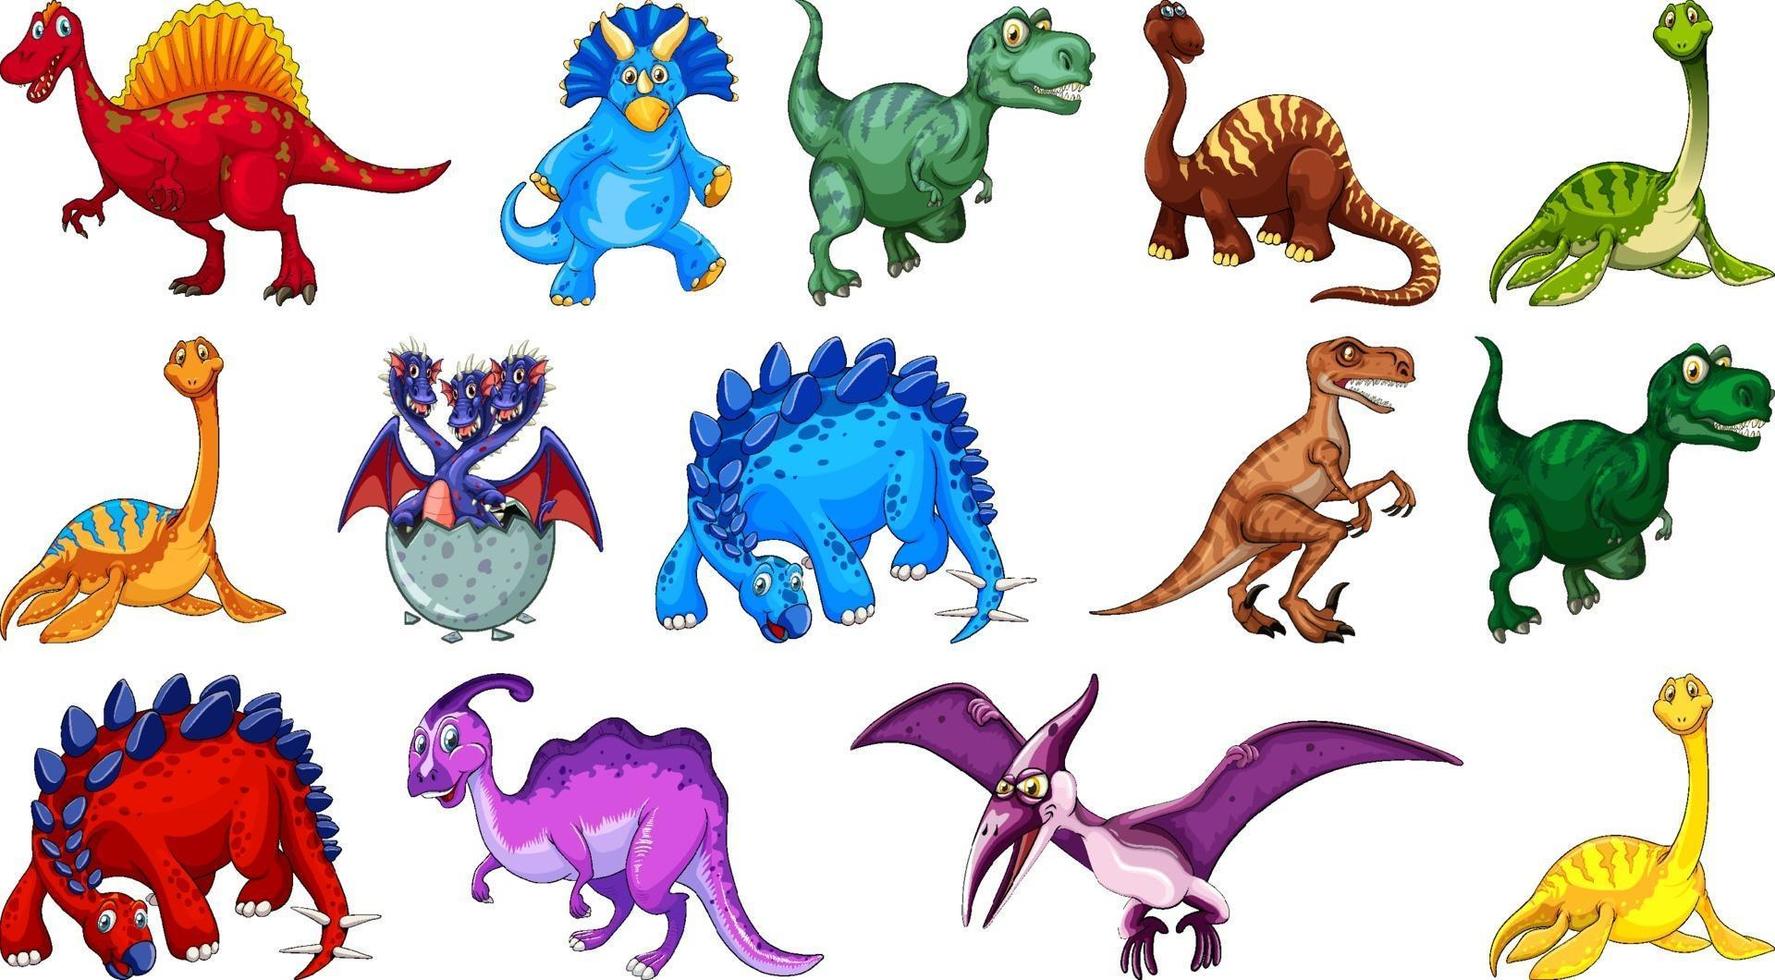 Personnage de dessin animé de dinosaures différents et dragons fantastiques isolés vecteur